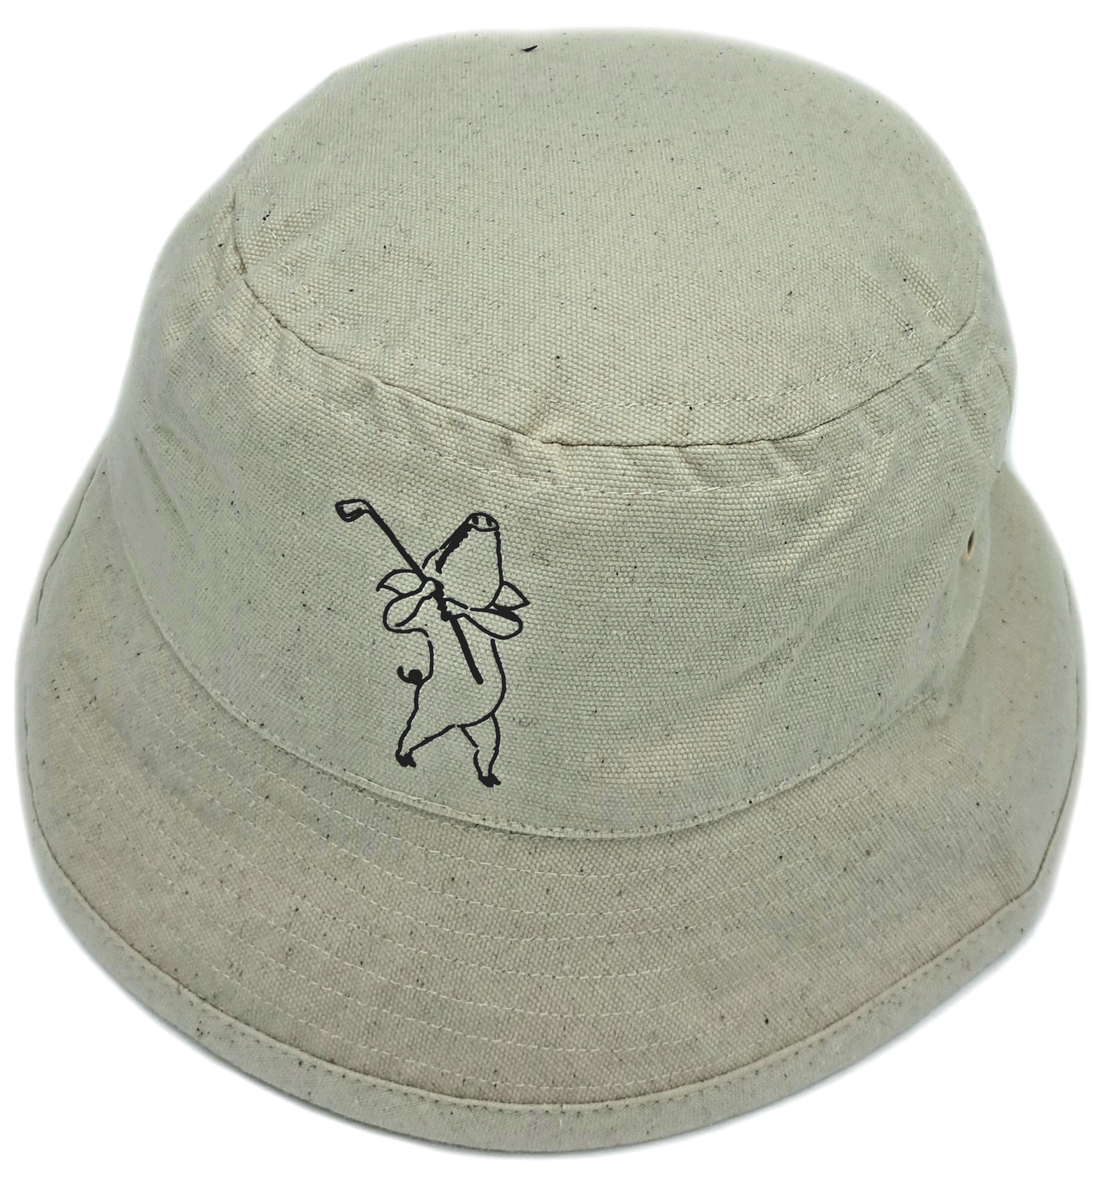 En vit bucket hat med en tecknad gris som golfar på.